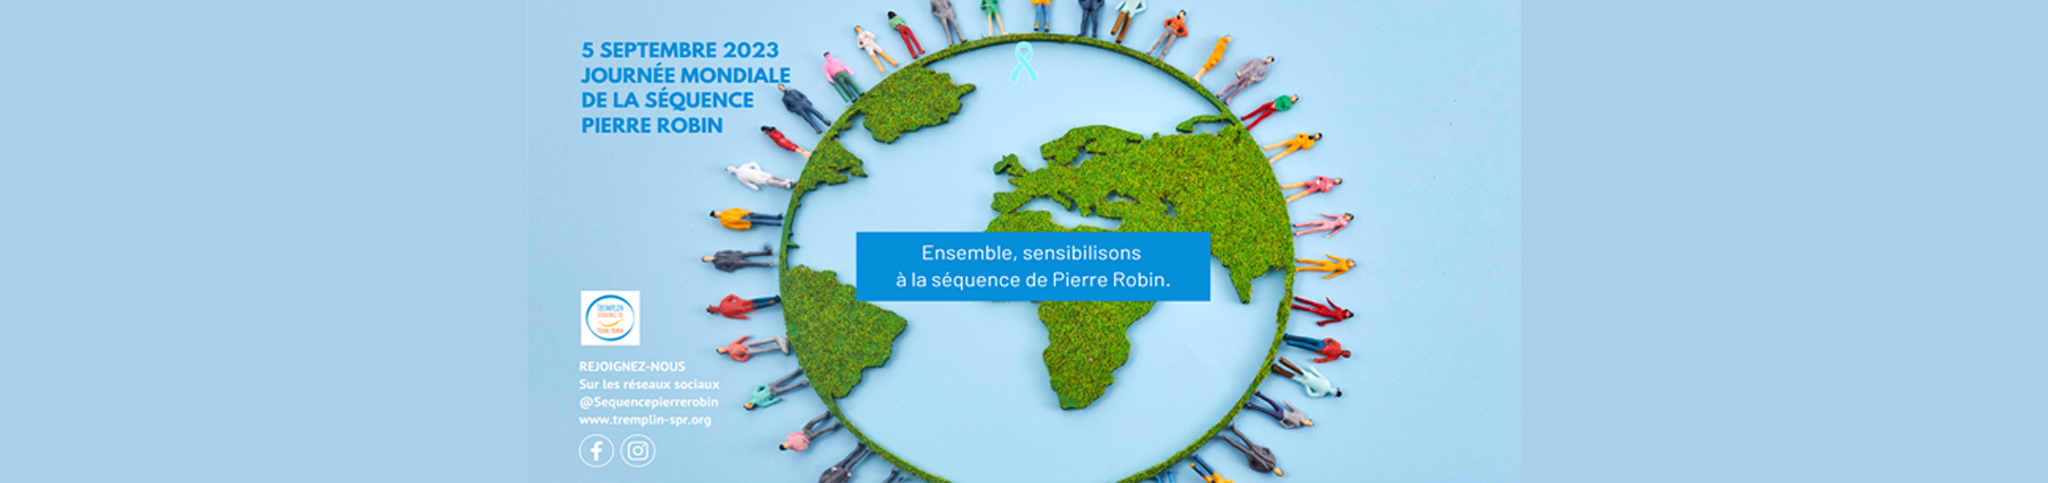 Bandeau Journée mondiale de sensibilisation à la Séquence de Pierre Robin